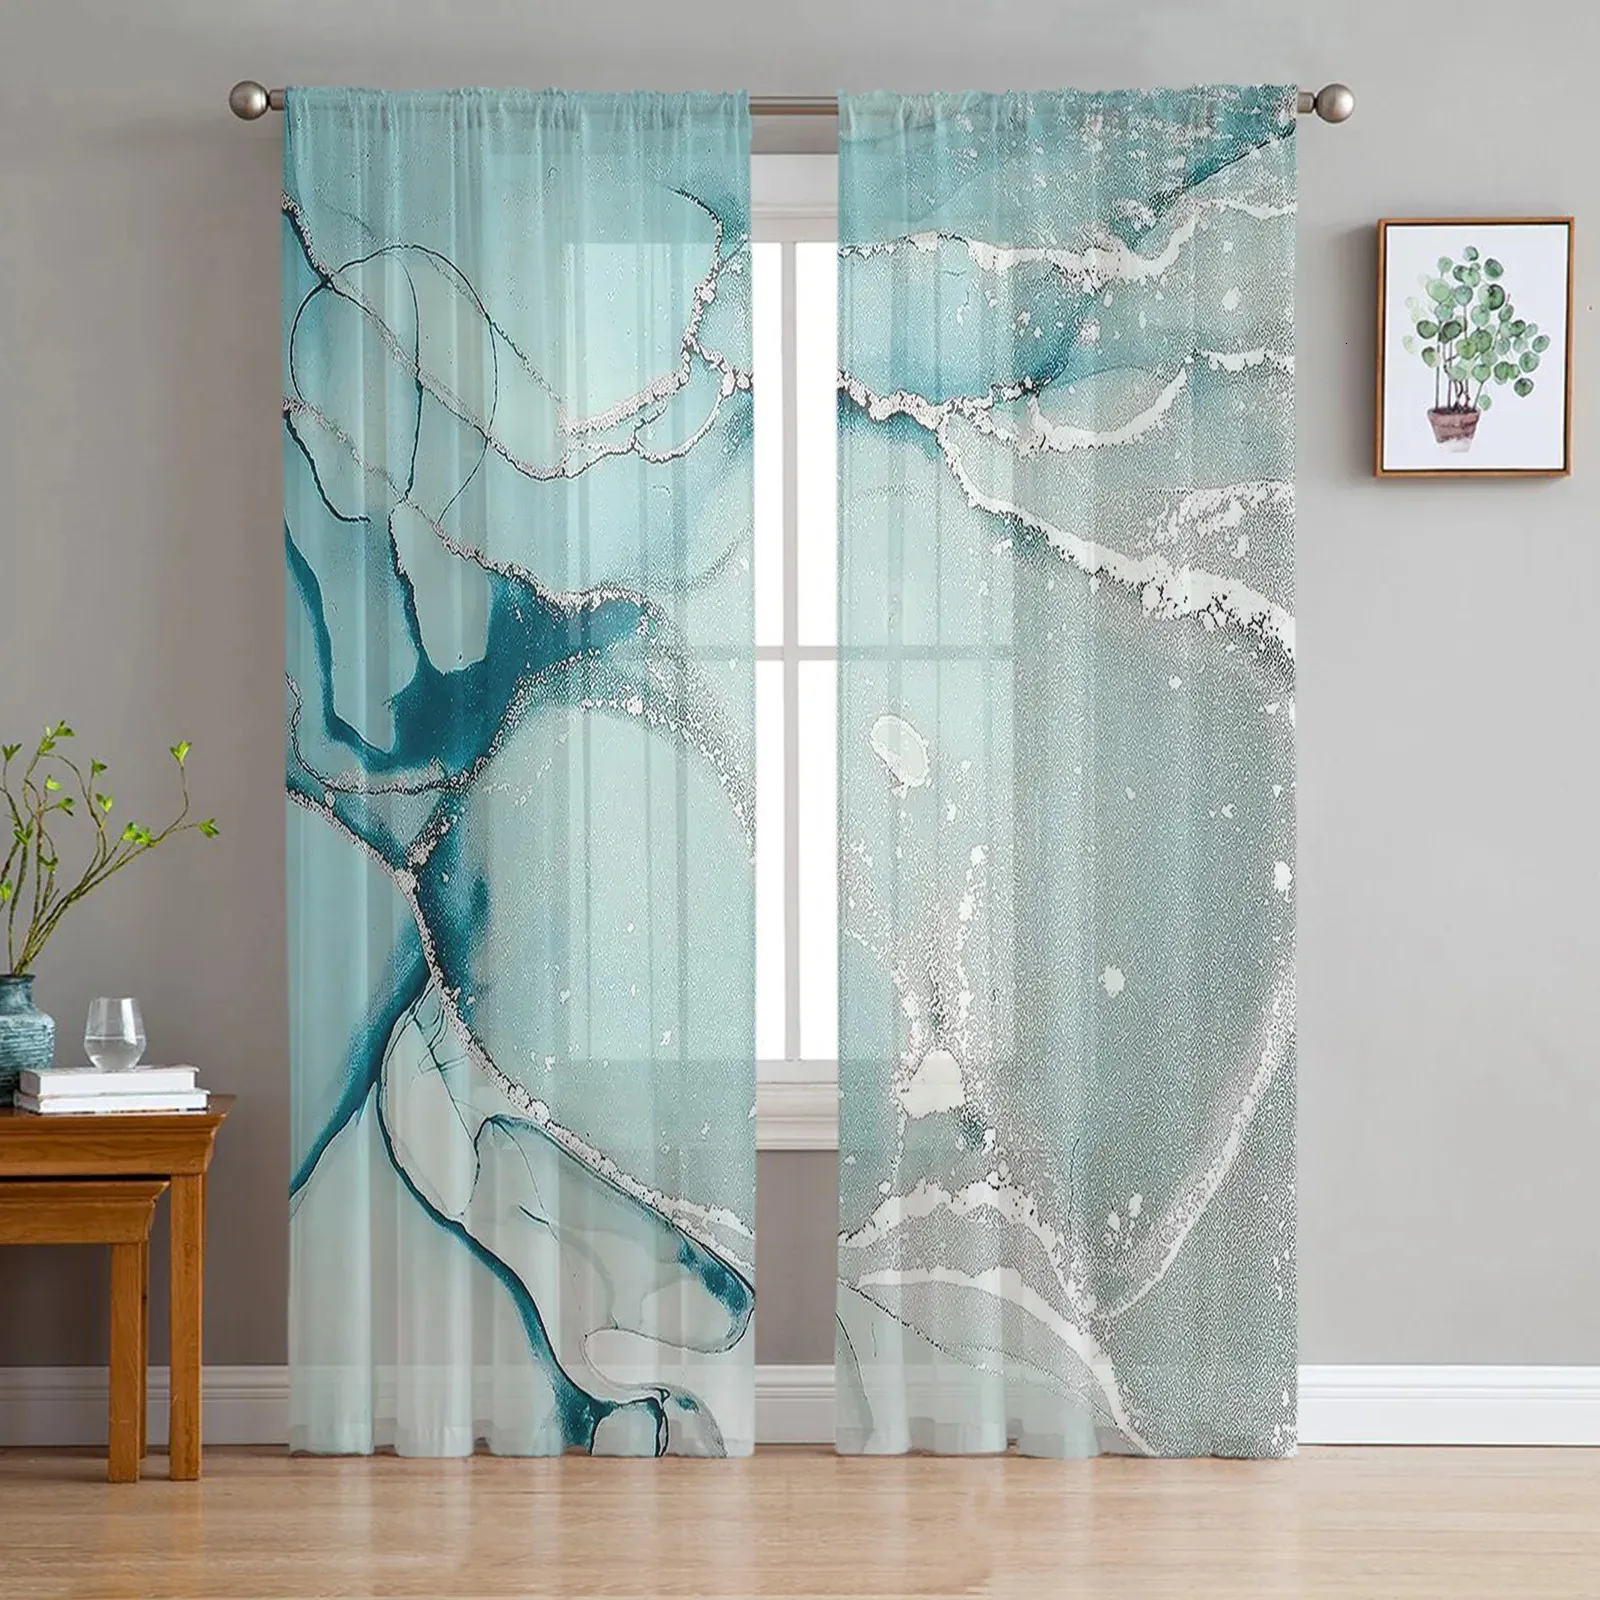 Cortinas de tule com textura de mármore para sala de estar, quarto, cozinha, decoração, transparente, chiffon, pura voile, cortina de janela 240110